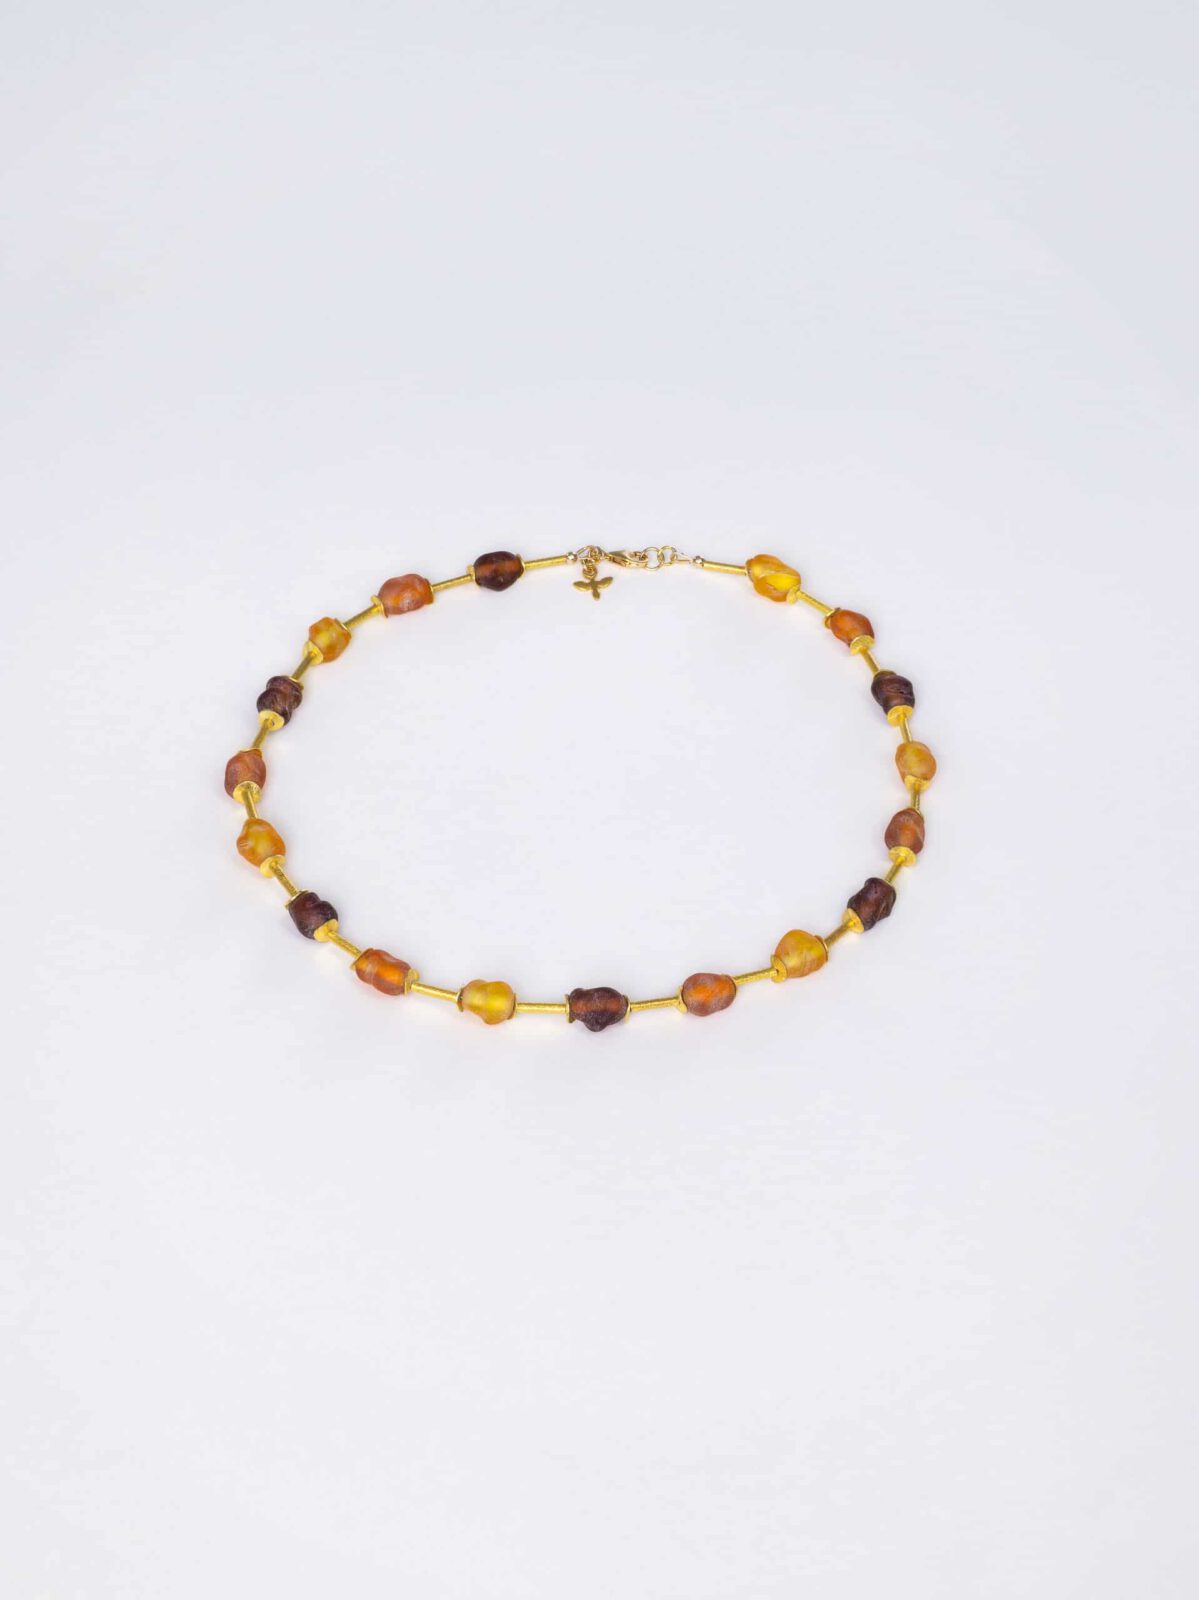 SAROCCA Glas Schmuck individuell nachhaltig Halskette orange braun gelb vergoldetes Silber